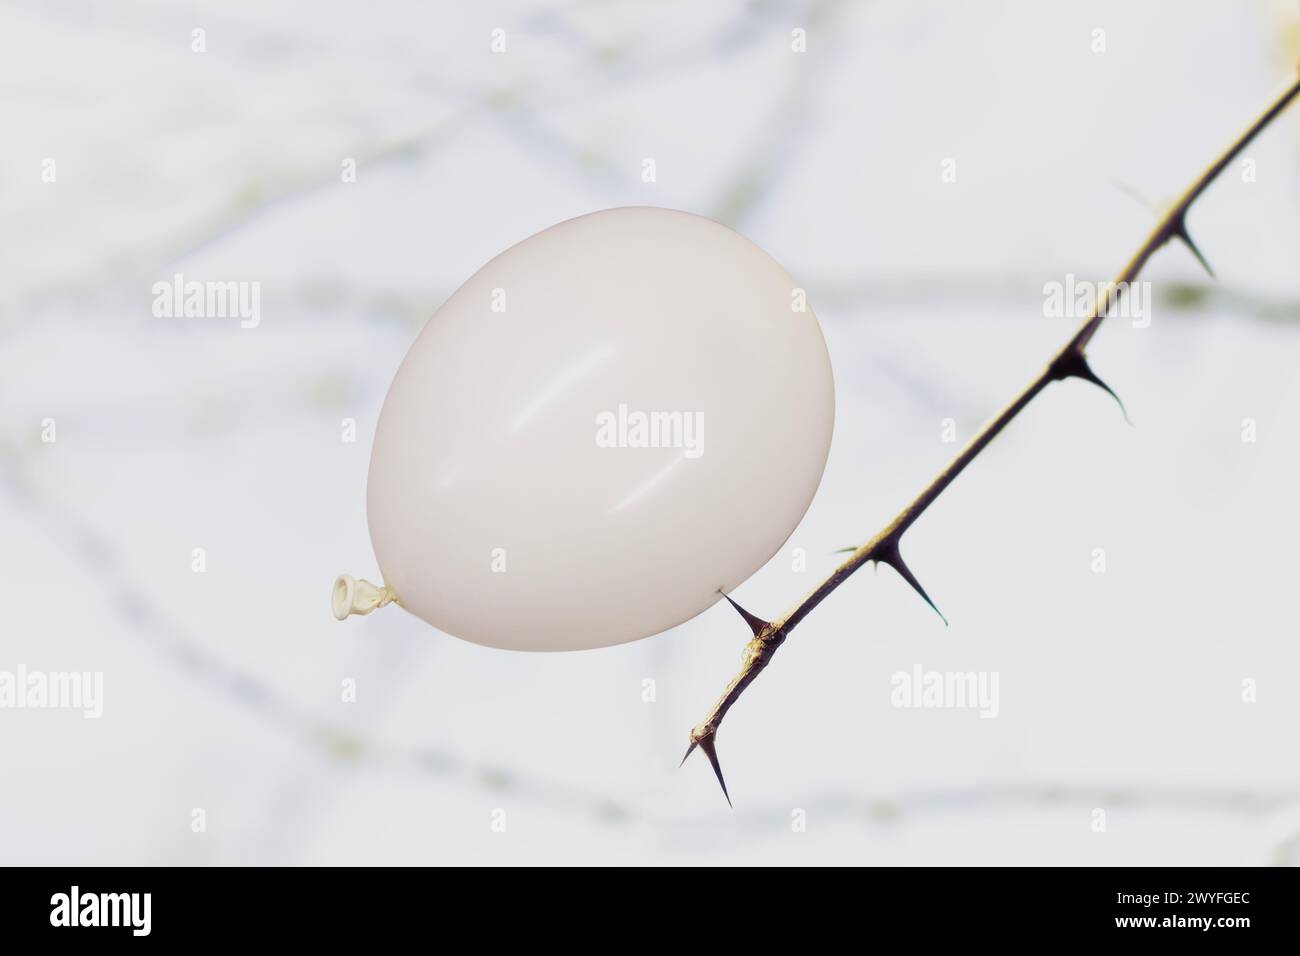 ballon blanc volant repose sur une épine végétale en danger d'éclatement, concept abstrait Banque D'Images